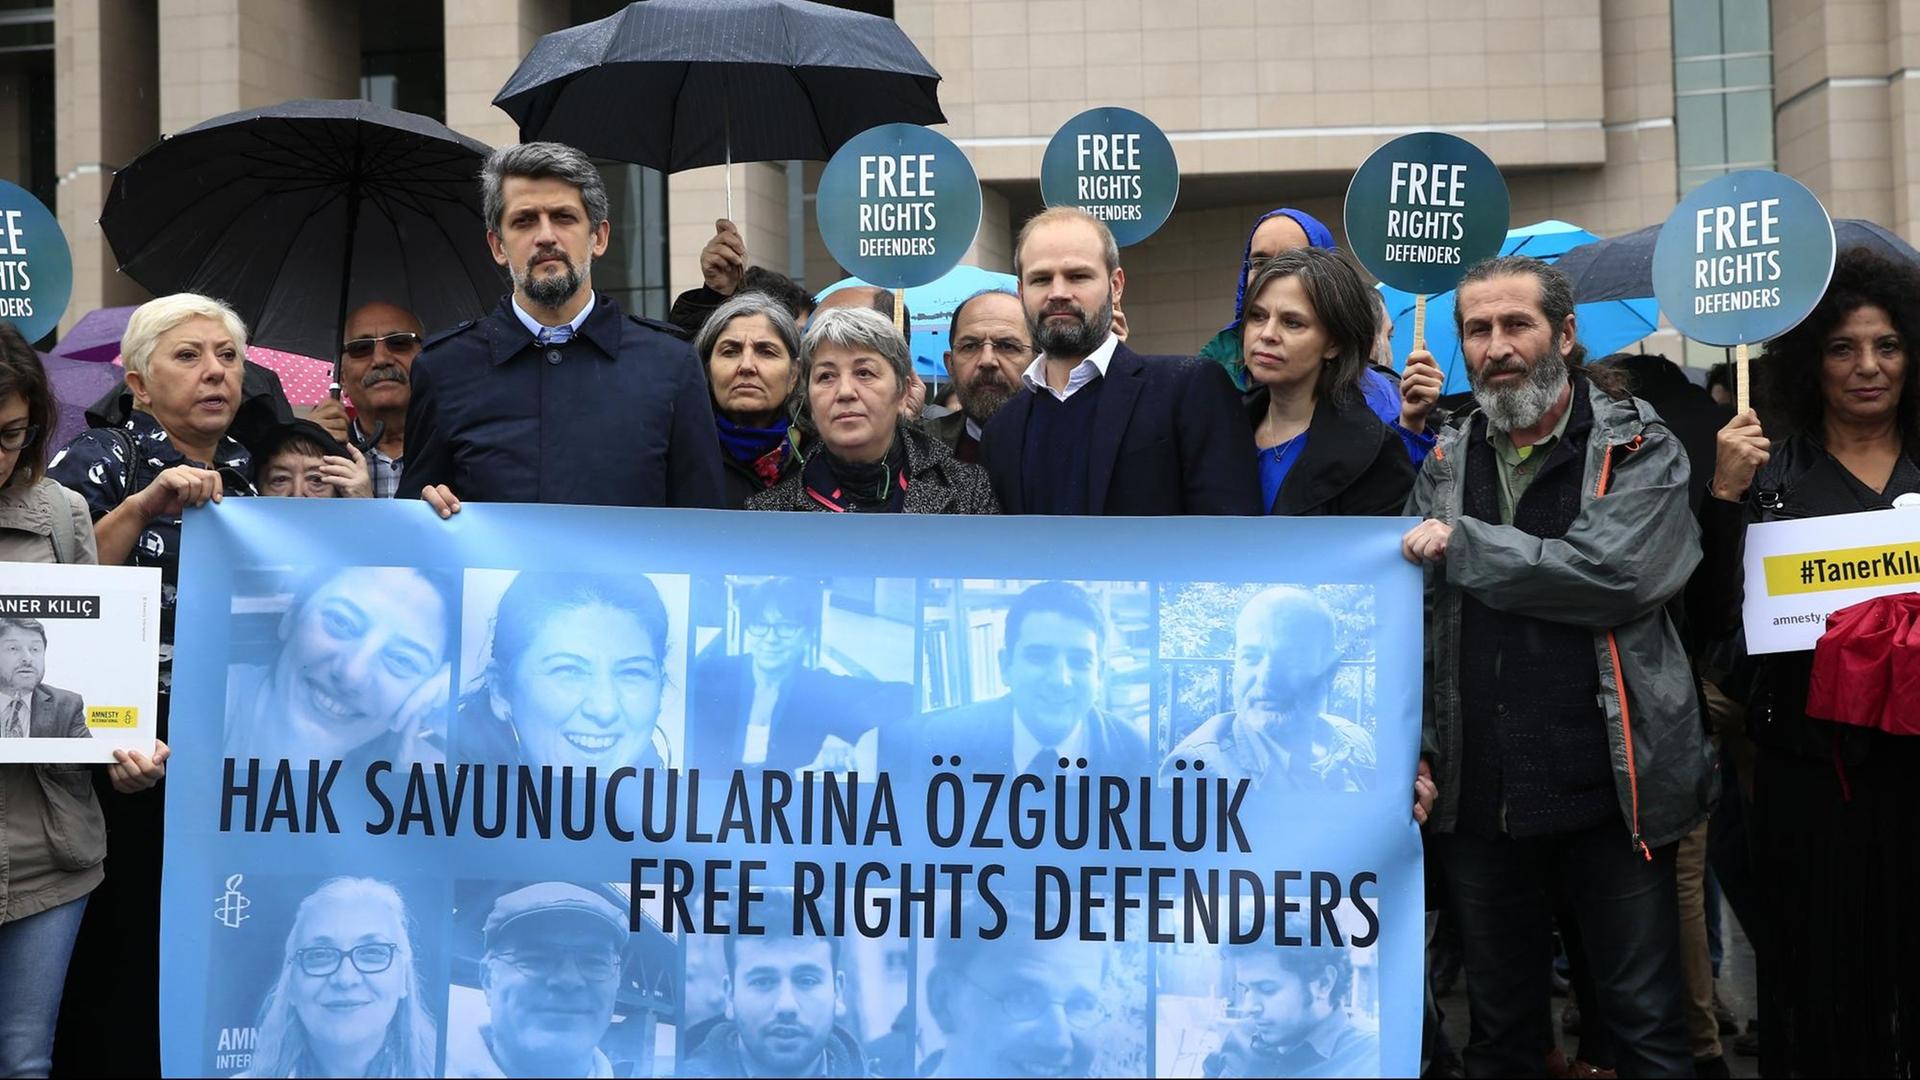 Menschenrechts-Aktivisten demonstrieren am 25.10.2017 vor einem Gericht in Istanbul (Türkei) mit einem Transparent mit Bildern der Angeklagten gegen den Prozess gegen elf Menschenrechtler, darunter auch der Deutsche Peter Steudtner (auf dem Banner der 2.v.r. unten).